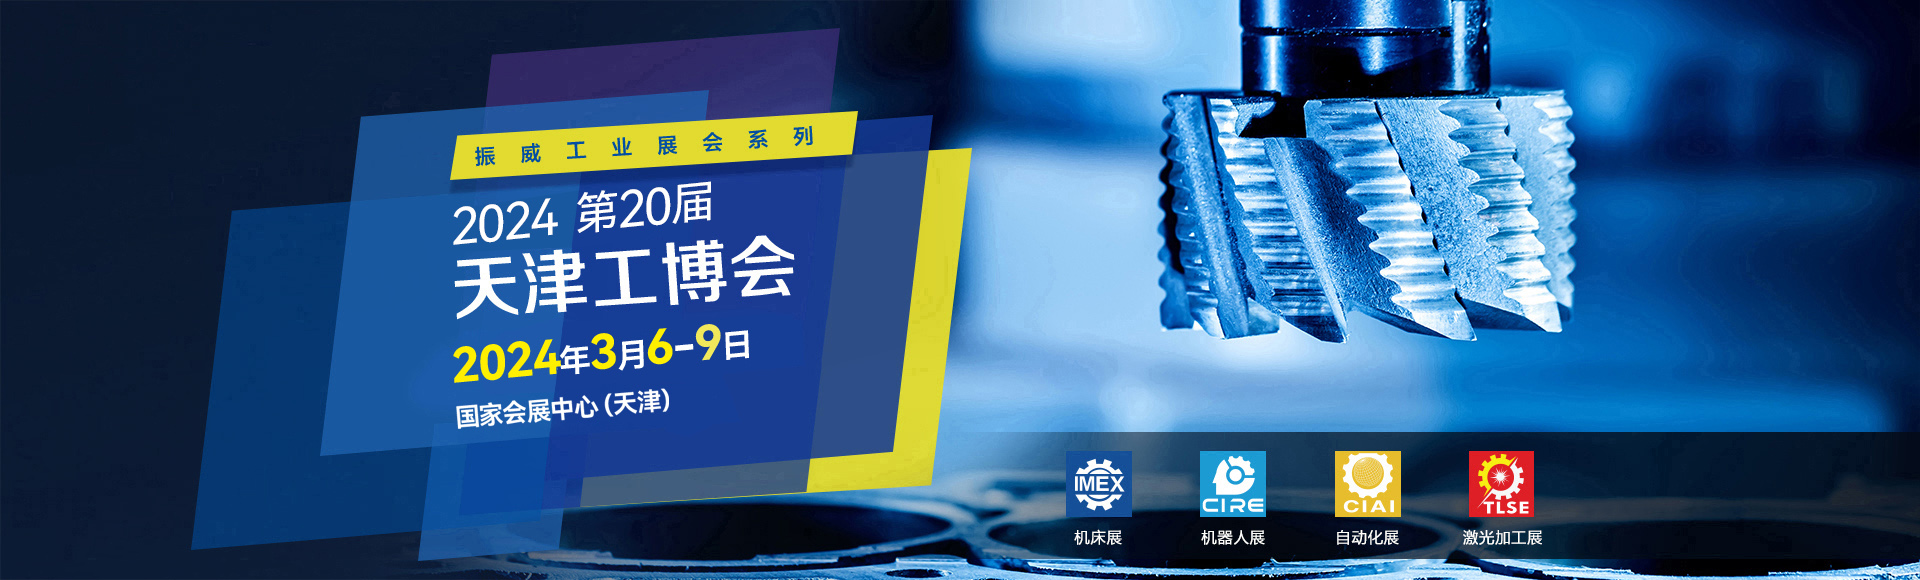 CIE中国天津工业博览会【官网】